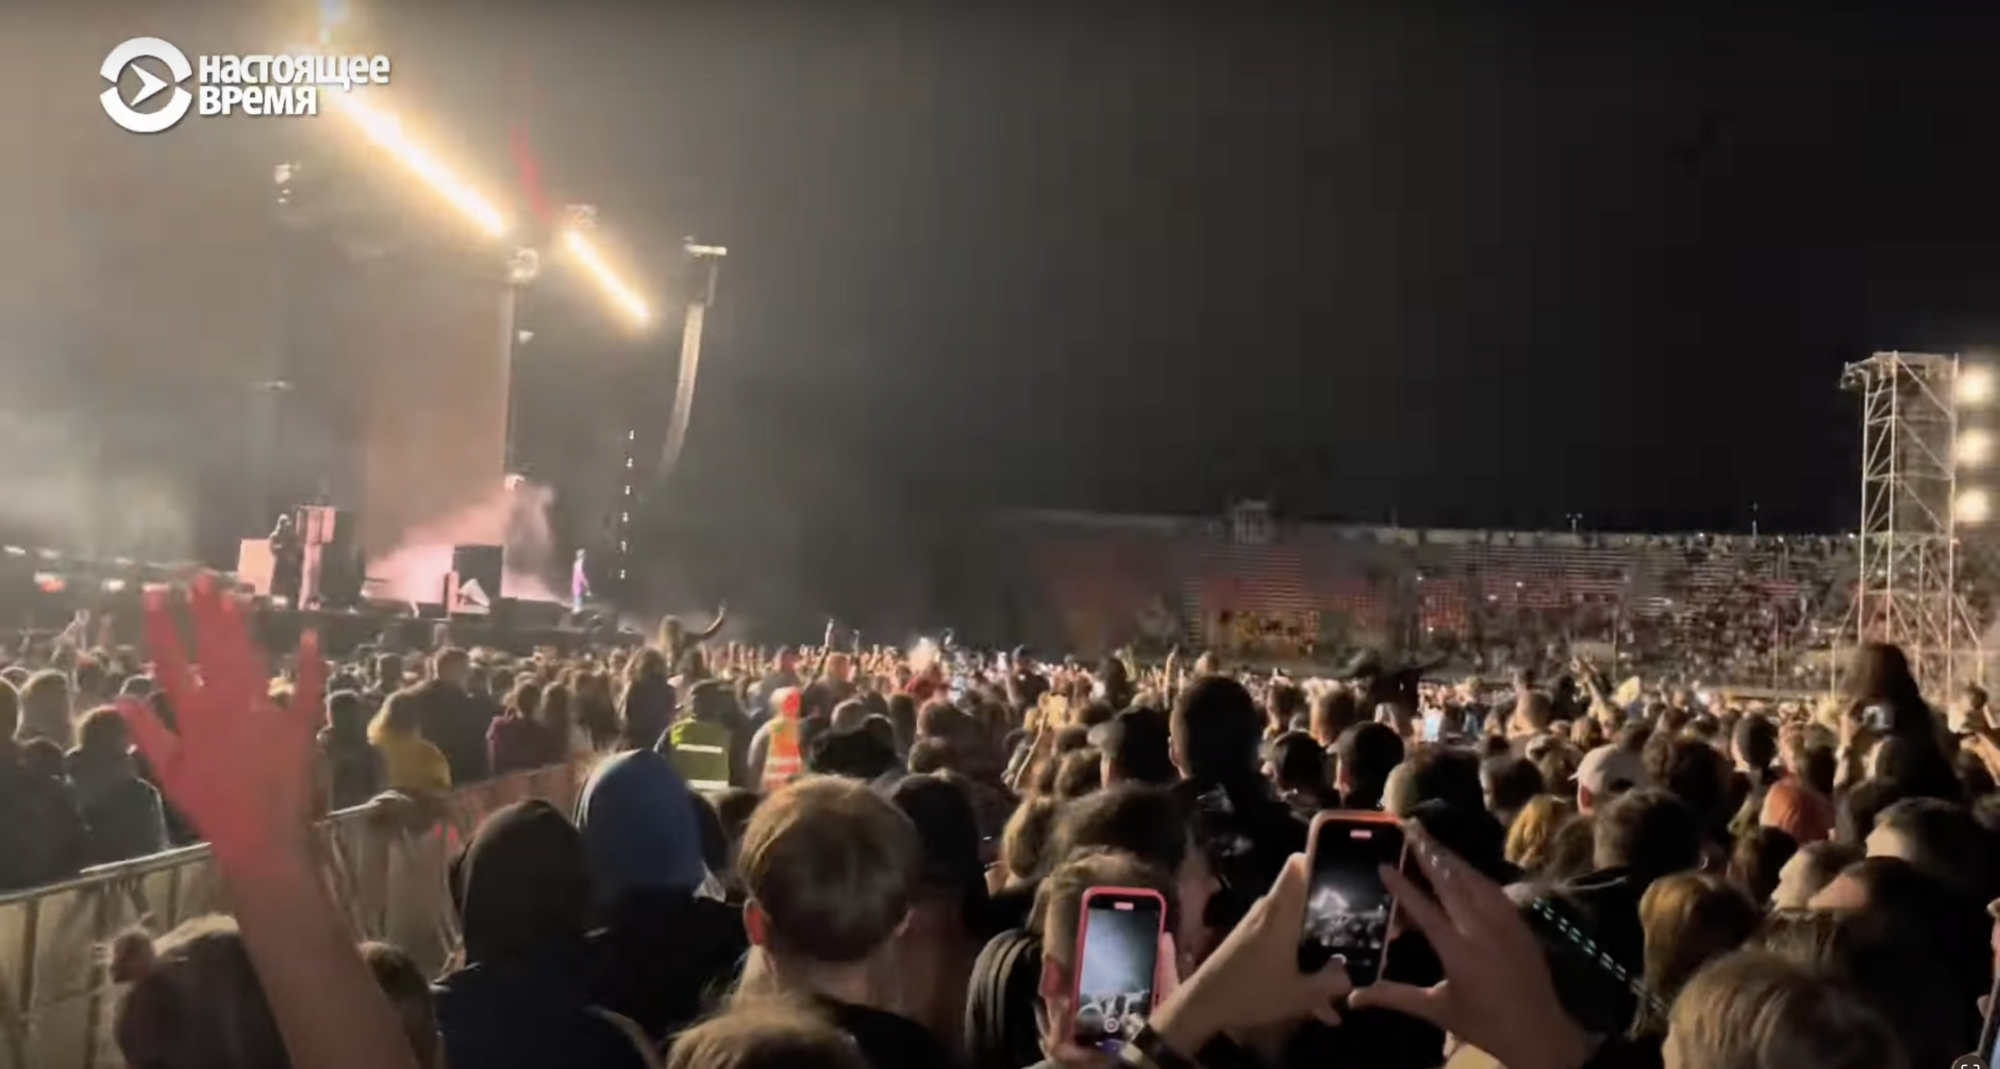 Макс Корж на своем концерте в Риге призвал 35-тысячную публику скандировать "Нет войне!" и вызвал истерику у россиян